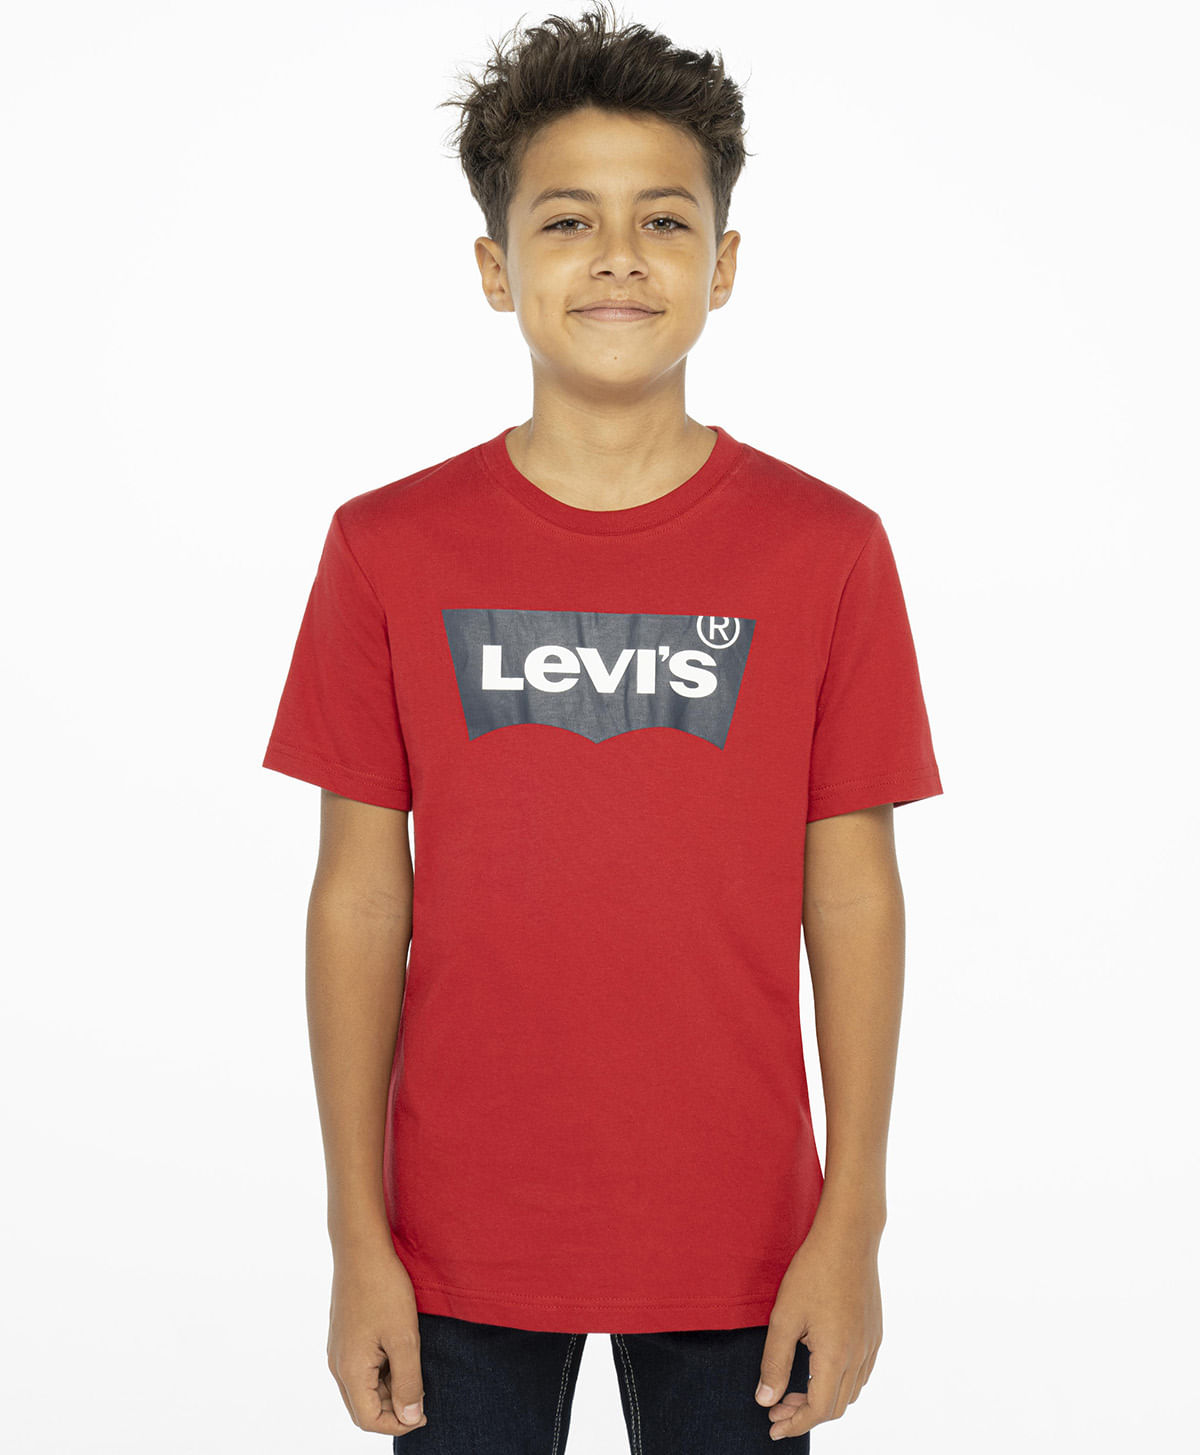 Kids | Levi's Peru - Levis Perú Tienda Online